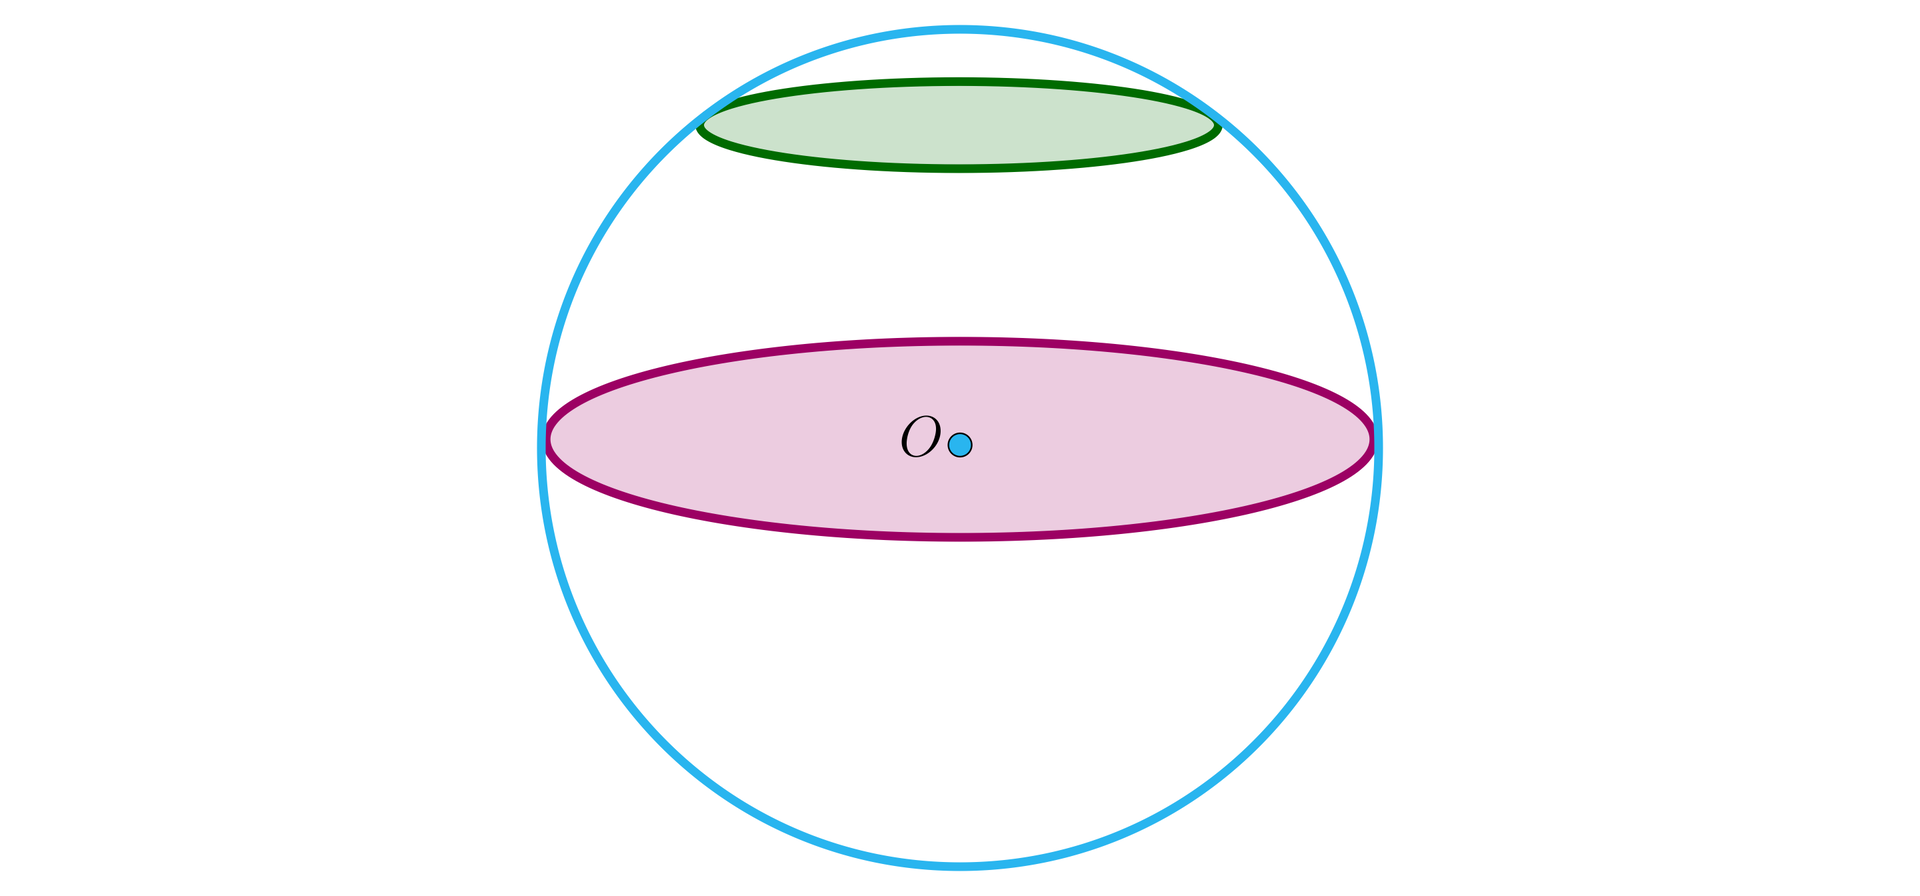 Ilustracja przedstawia kulę, wewnątrz której wykreślono dwa przekroje poprzeczne: jeden w górnej części kuli i drugi przechodzący przez środek O. Przekroje są kołami.